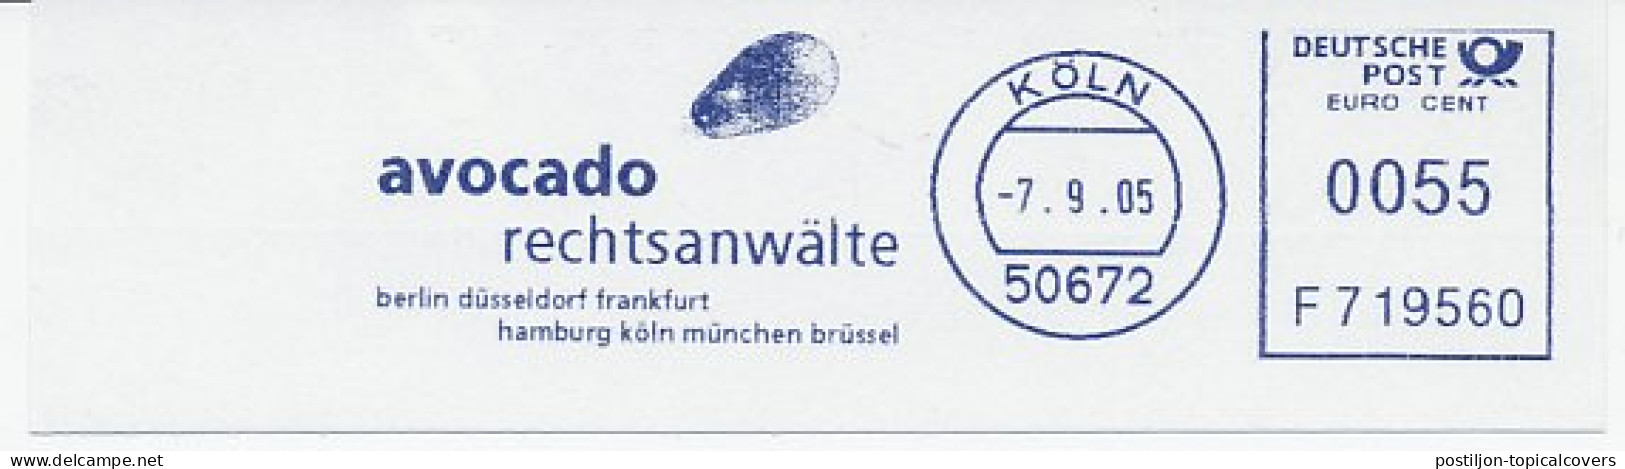 Meter Cut Germany 2005 Avocado - Fruit